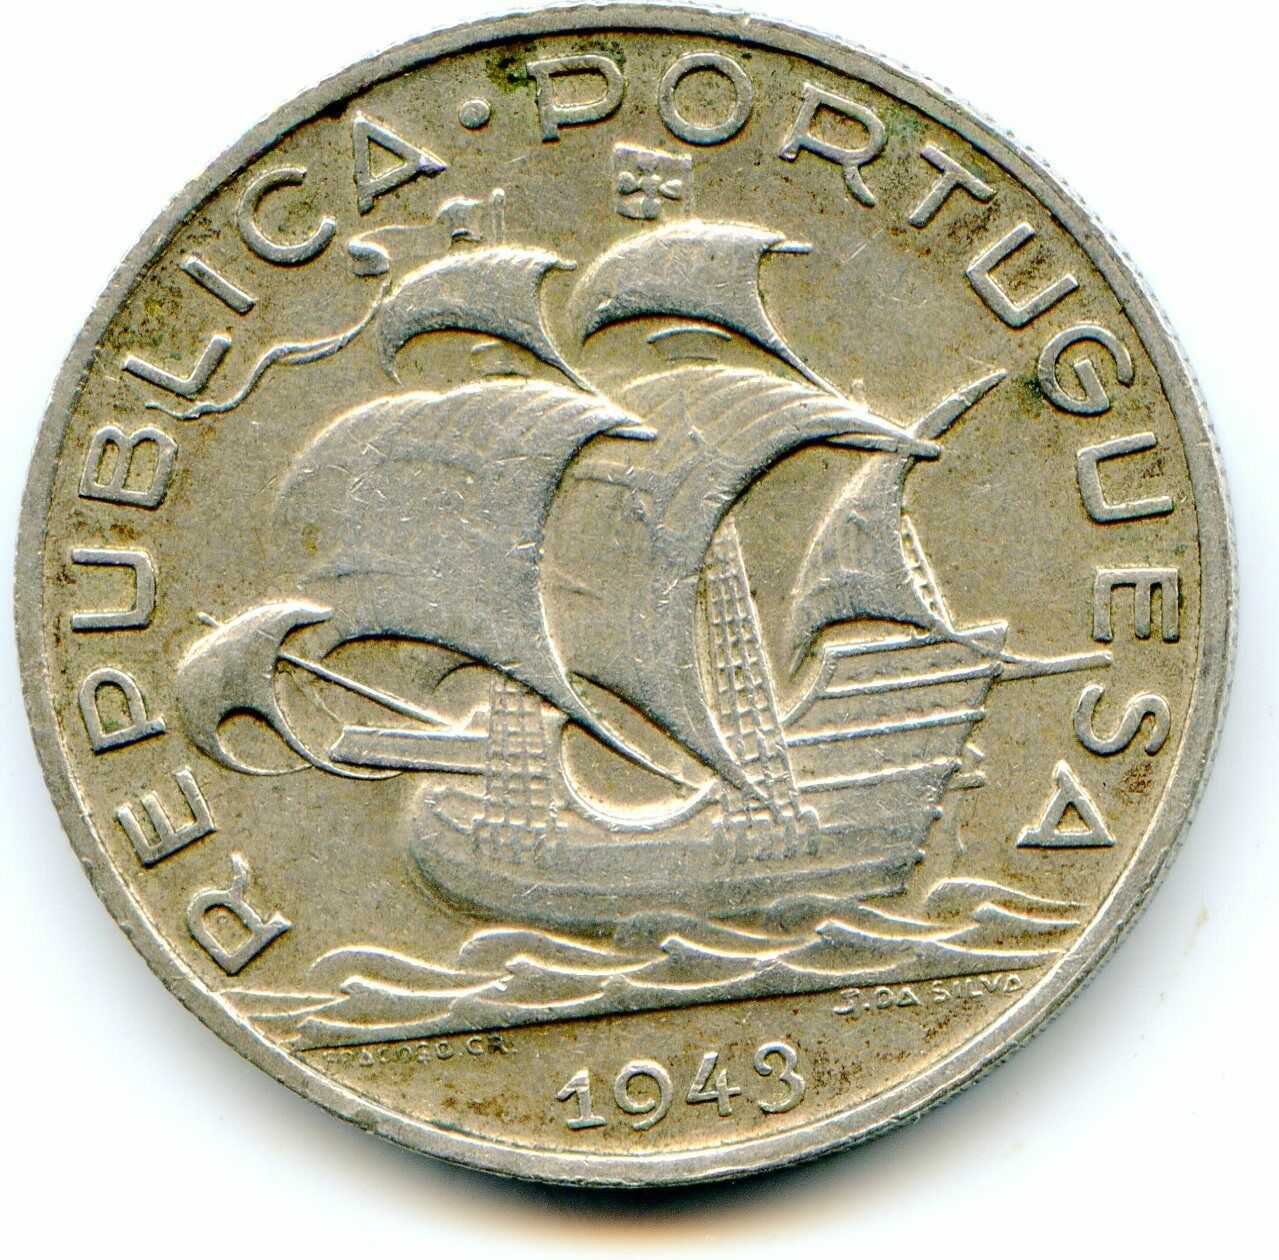 Portugal 5 Escudo 1943 Super Hg Coin Quite Scarce   Lotjul6566